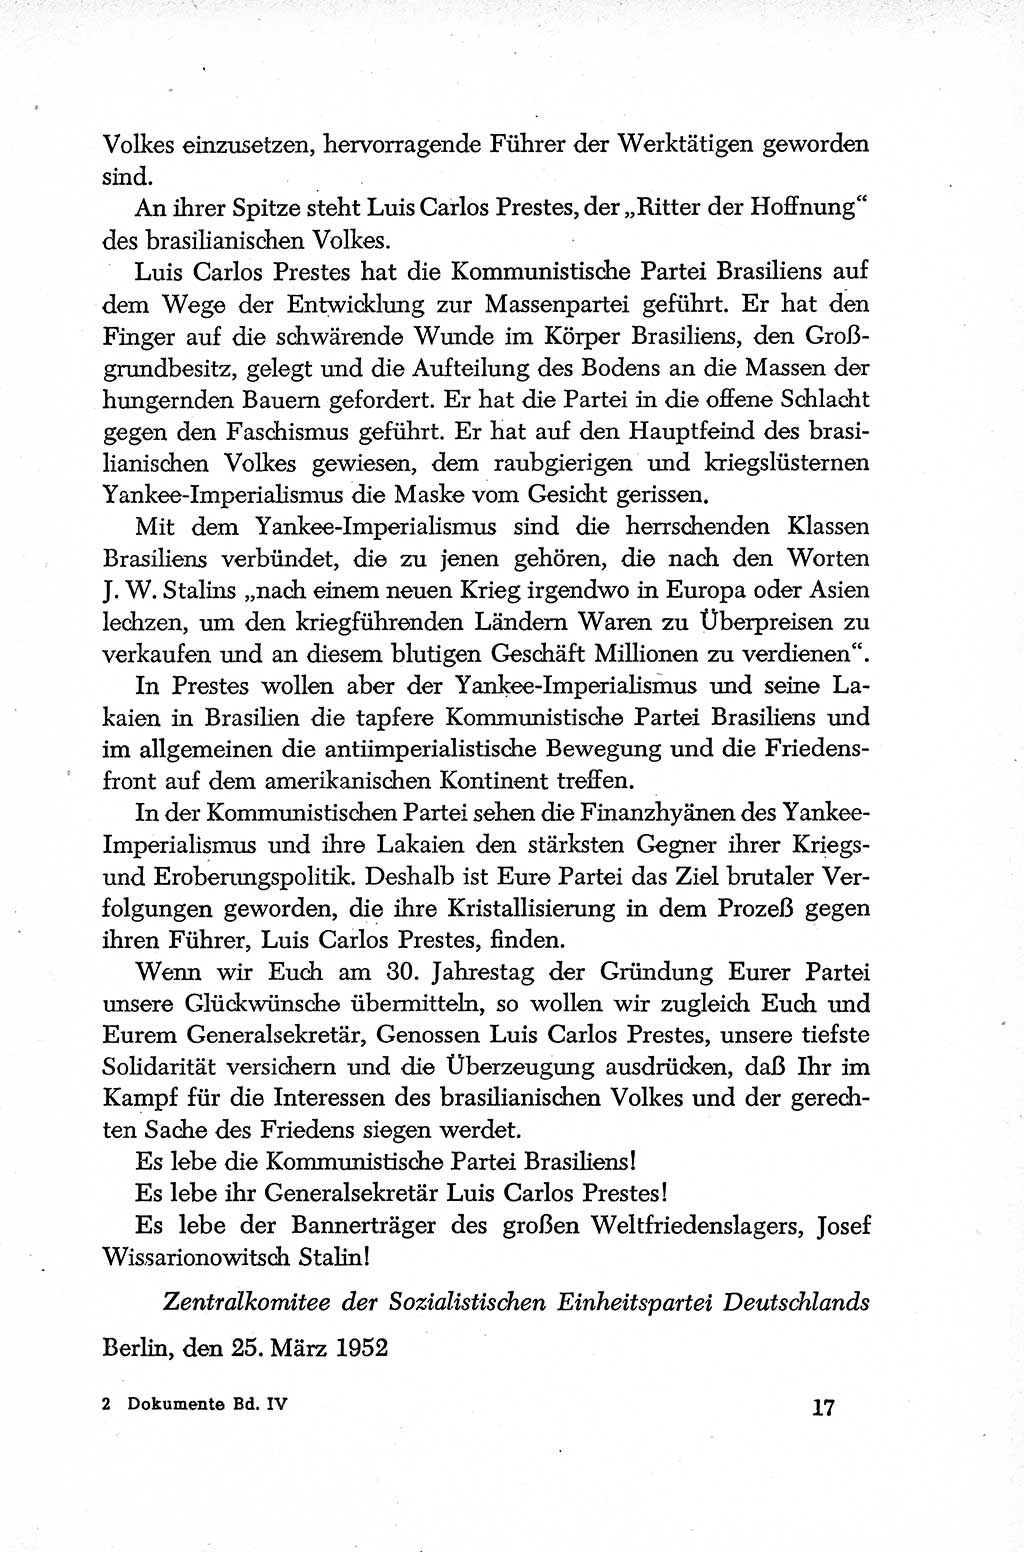 Dokumente der Sozialistischen Einheitspartei Deutschlands (SED) [Deutsche Demokratische Republik (DDR)] 1952-1953, Seite 17 (Dok. SED DDR 1952-1953, S. 17)